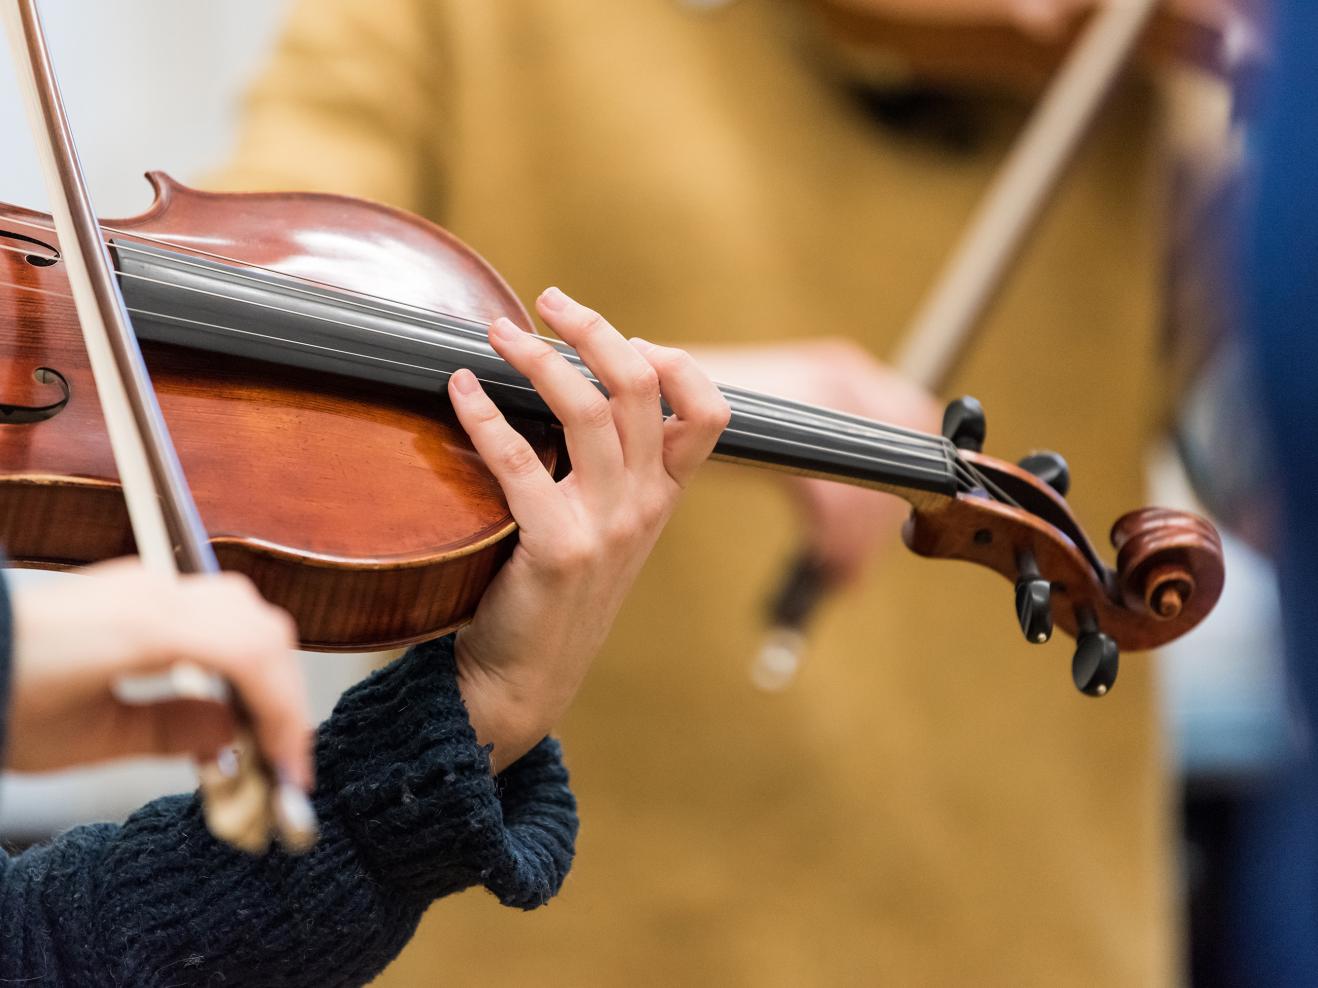 Nahaufnahme einer Bratsche bzw. Viola, die von zwei Händen in einem blauen Strickpulli gespielt wird.